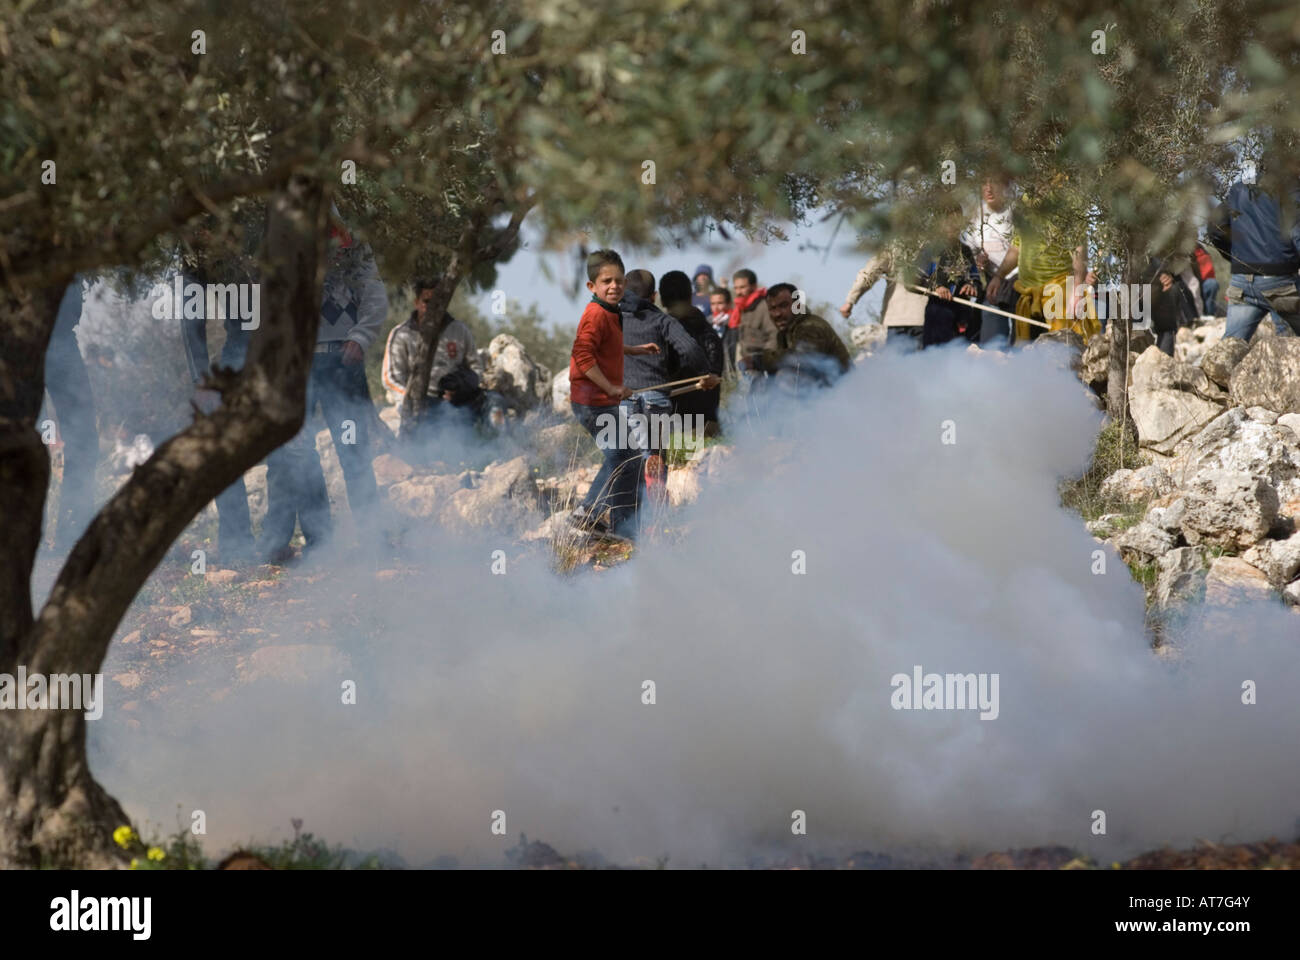 Los niños palestinos ejecutar después de que las tropas israelíes respondieron arrojando piedras con gas lacrimógeno durante una protesta violenta en la aldea de la Ribera Occidental de Bil'in Israel Foto de stock